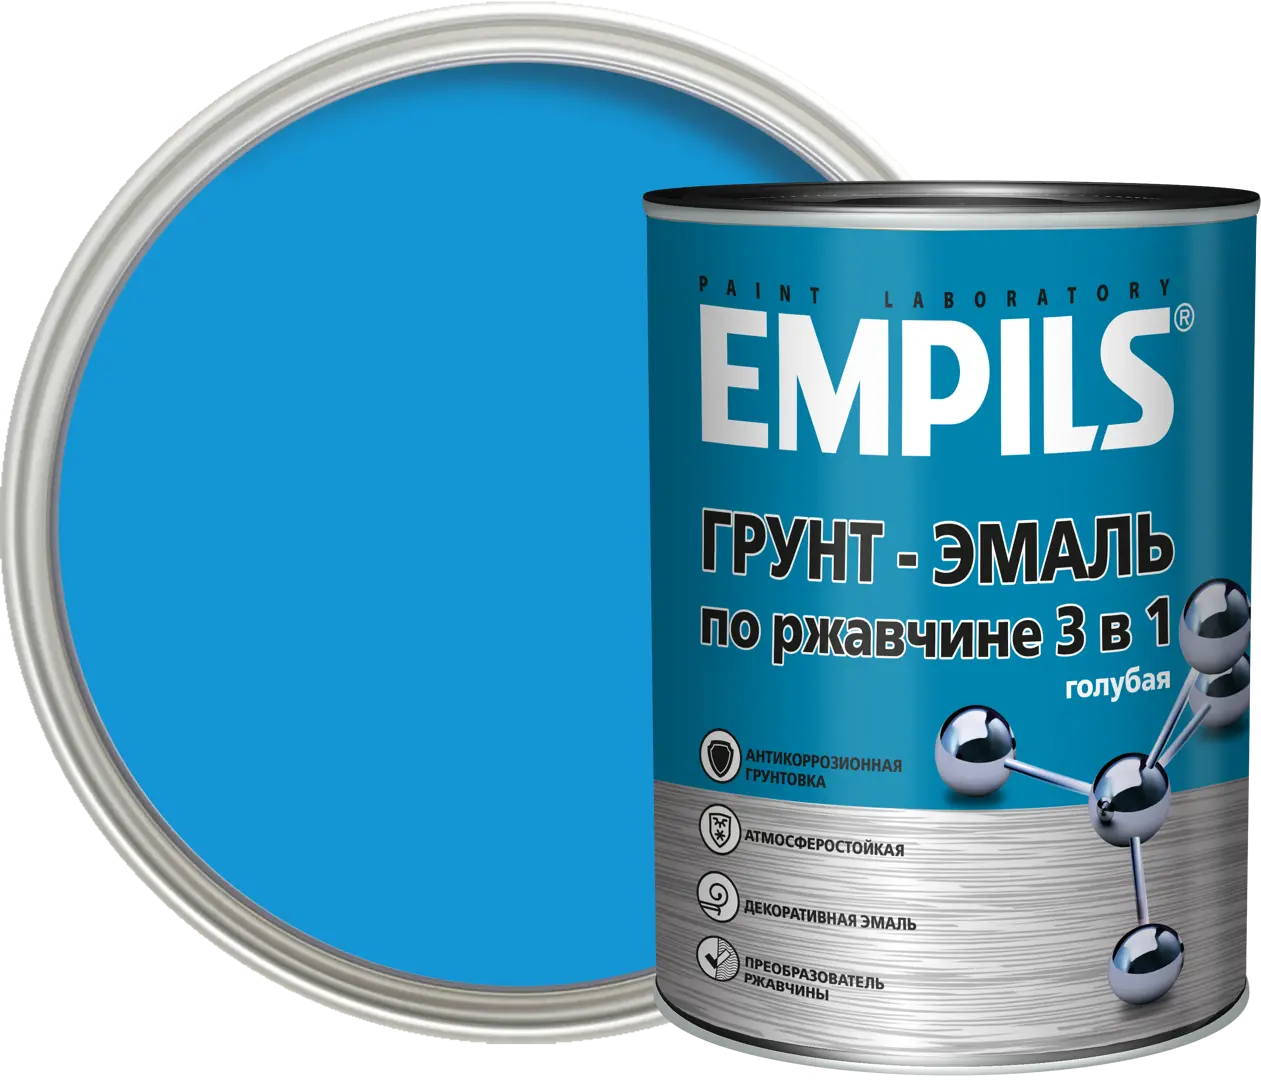 Грунт-эмаль по ржавчине 3 в 1 Empils PL цвет голубой 0.9 кг